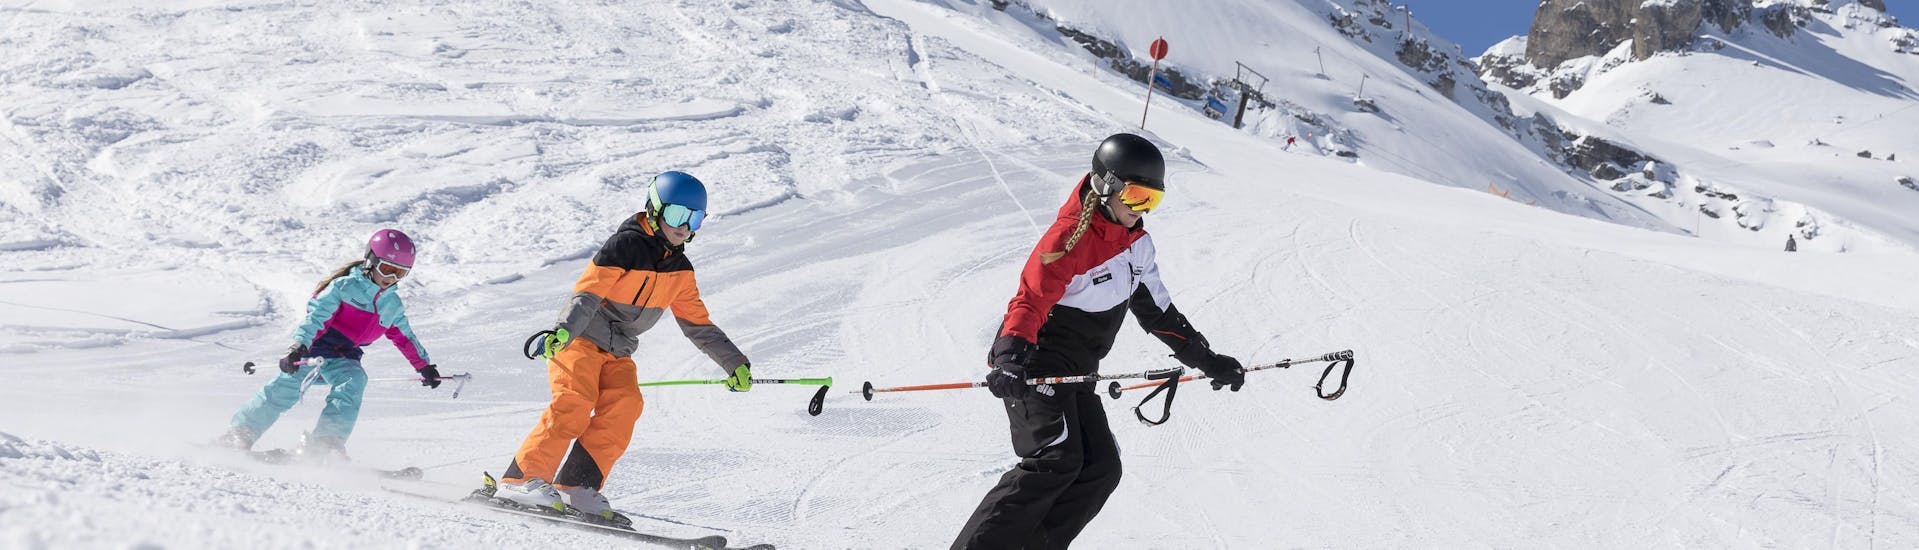 Clases de esquí para niños (4-14 años) para debutantes.